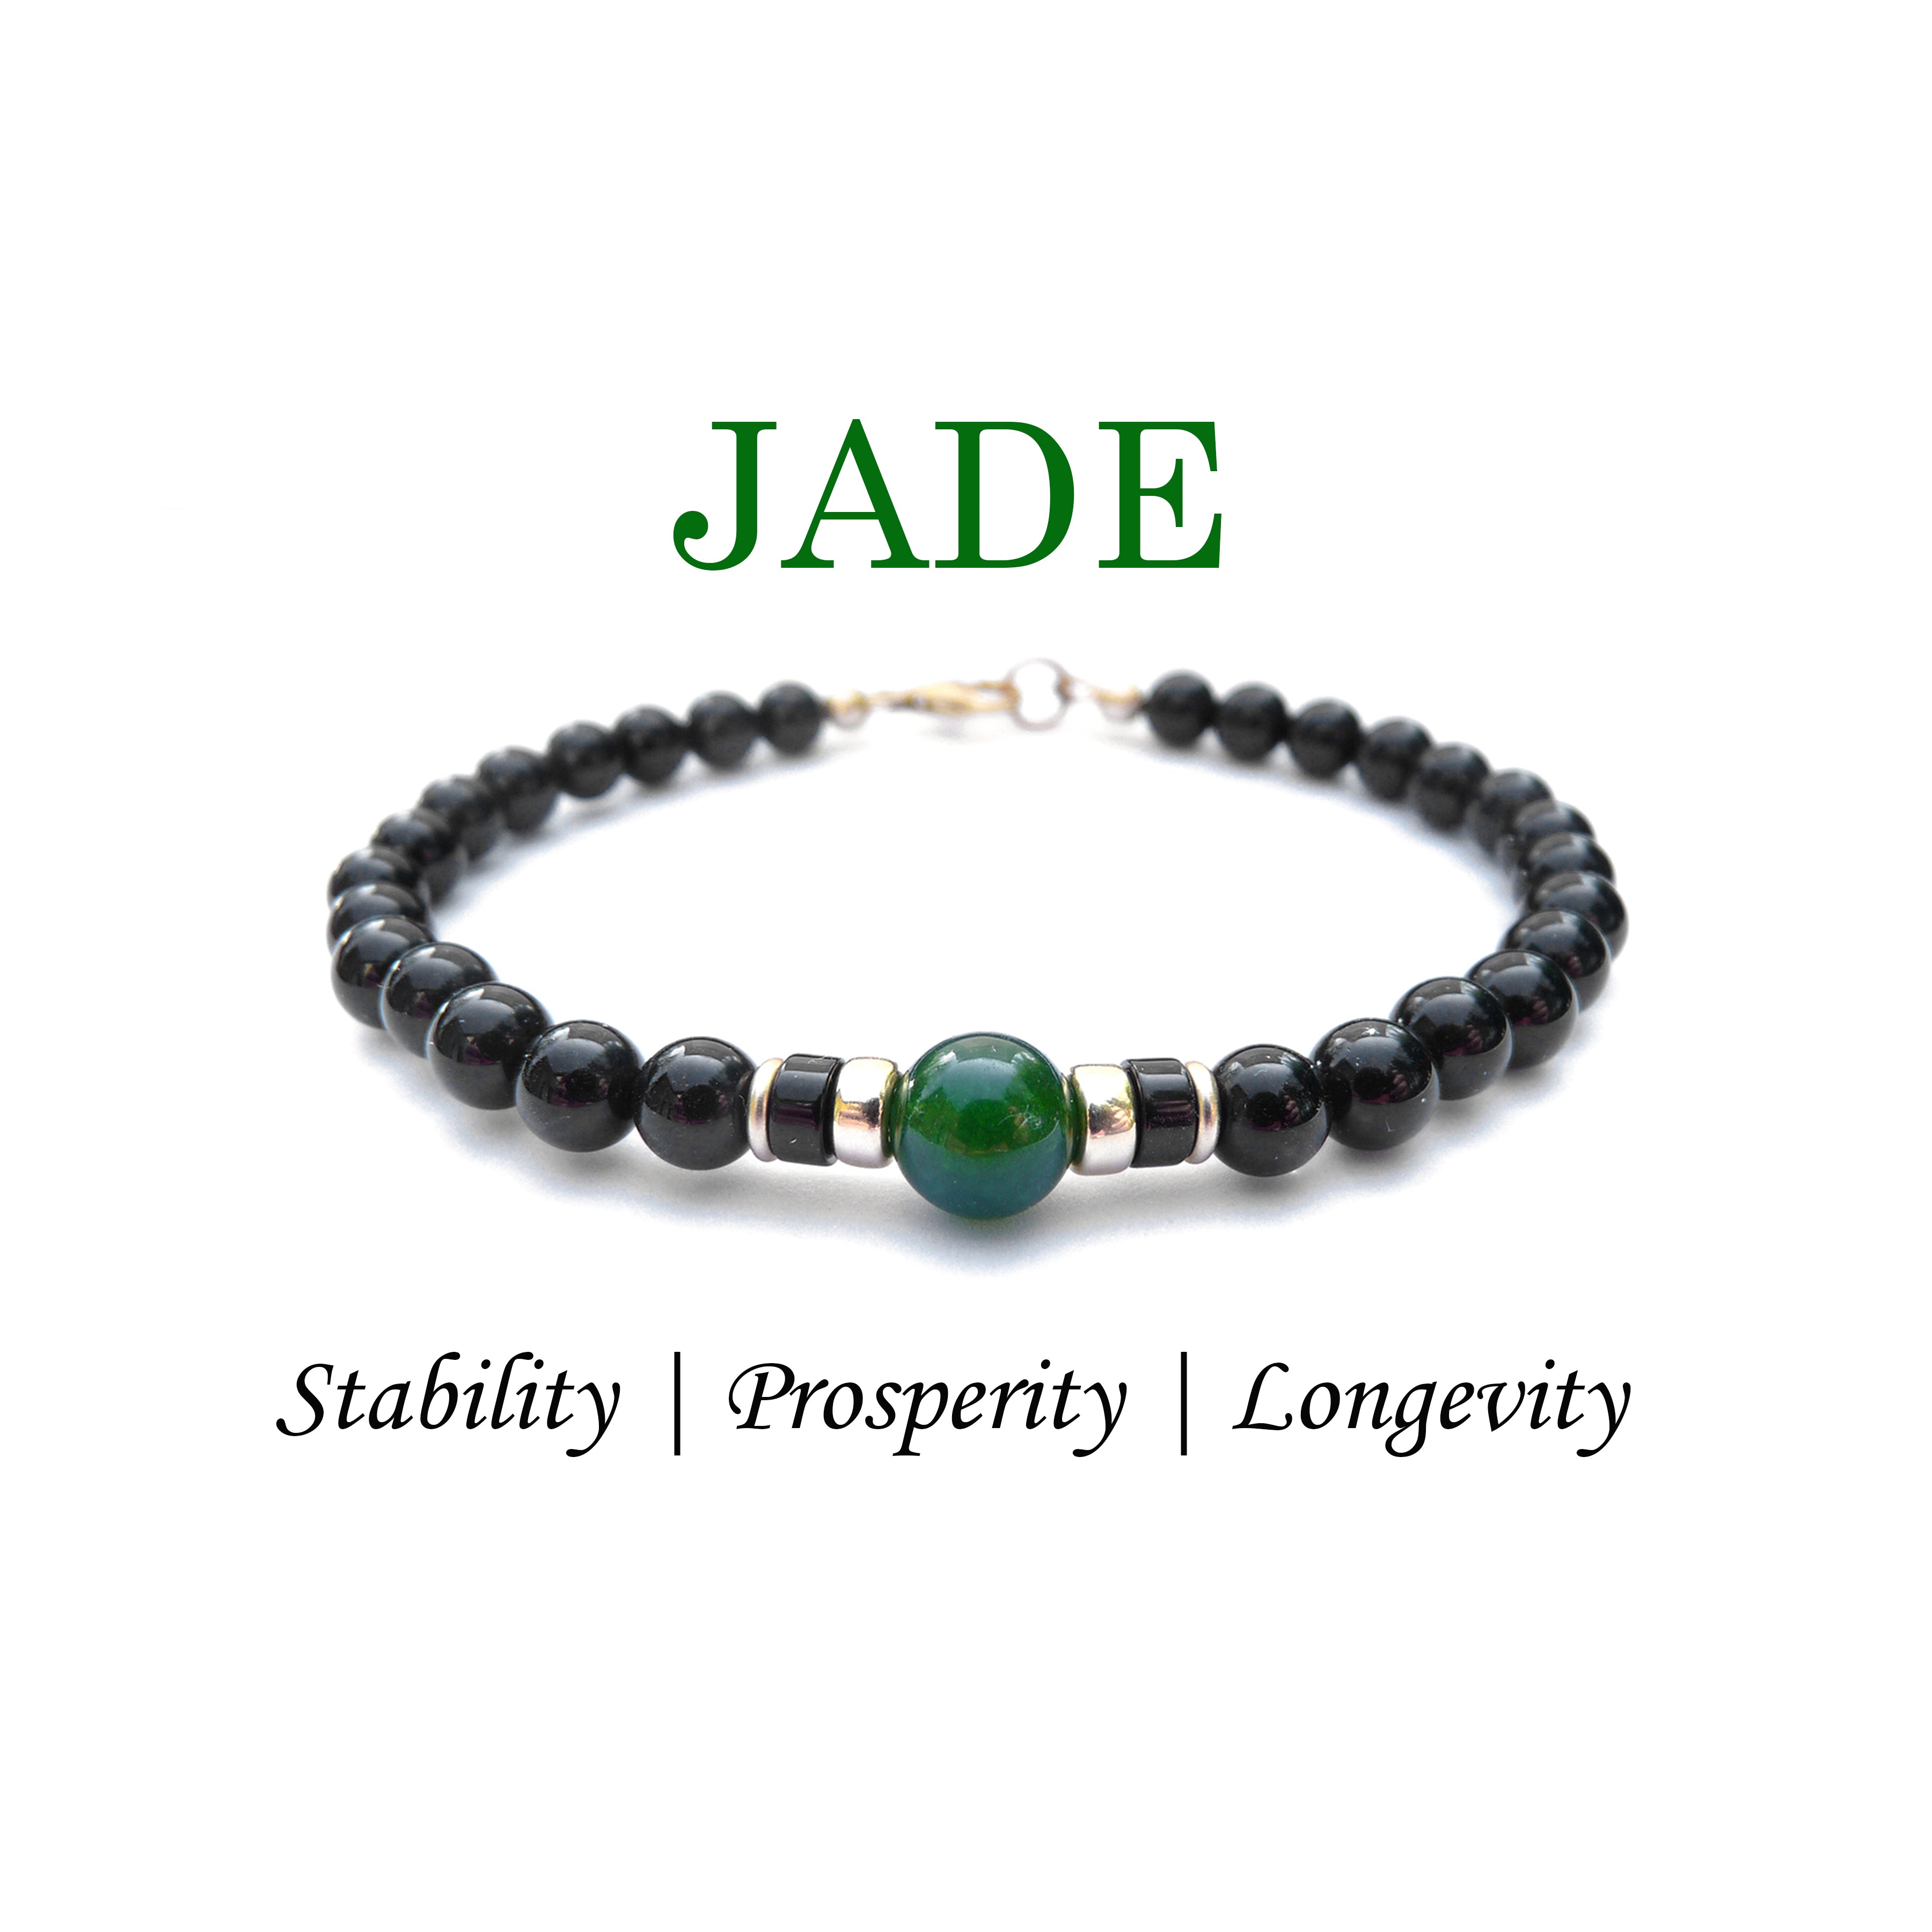 Jewelry, Customized Beaded Bracelets